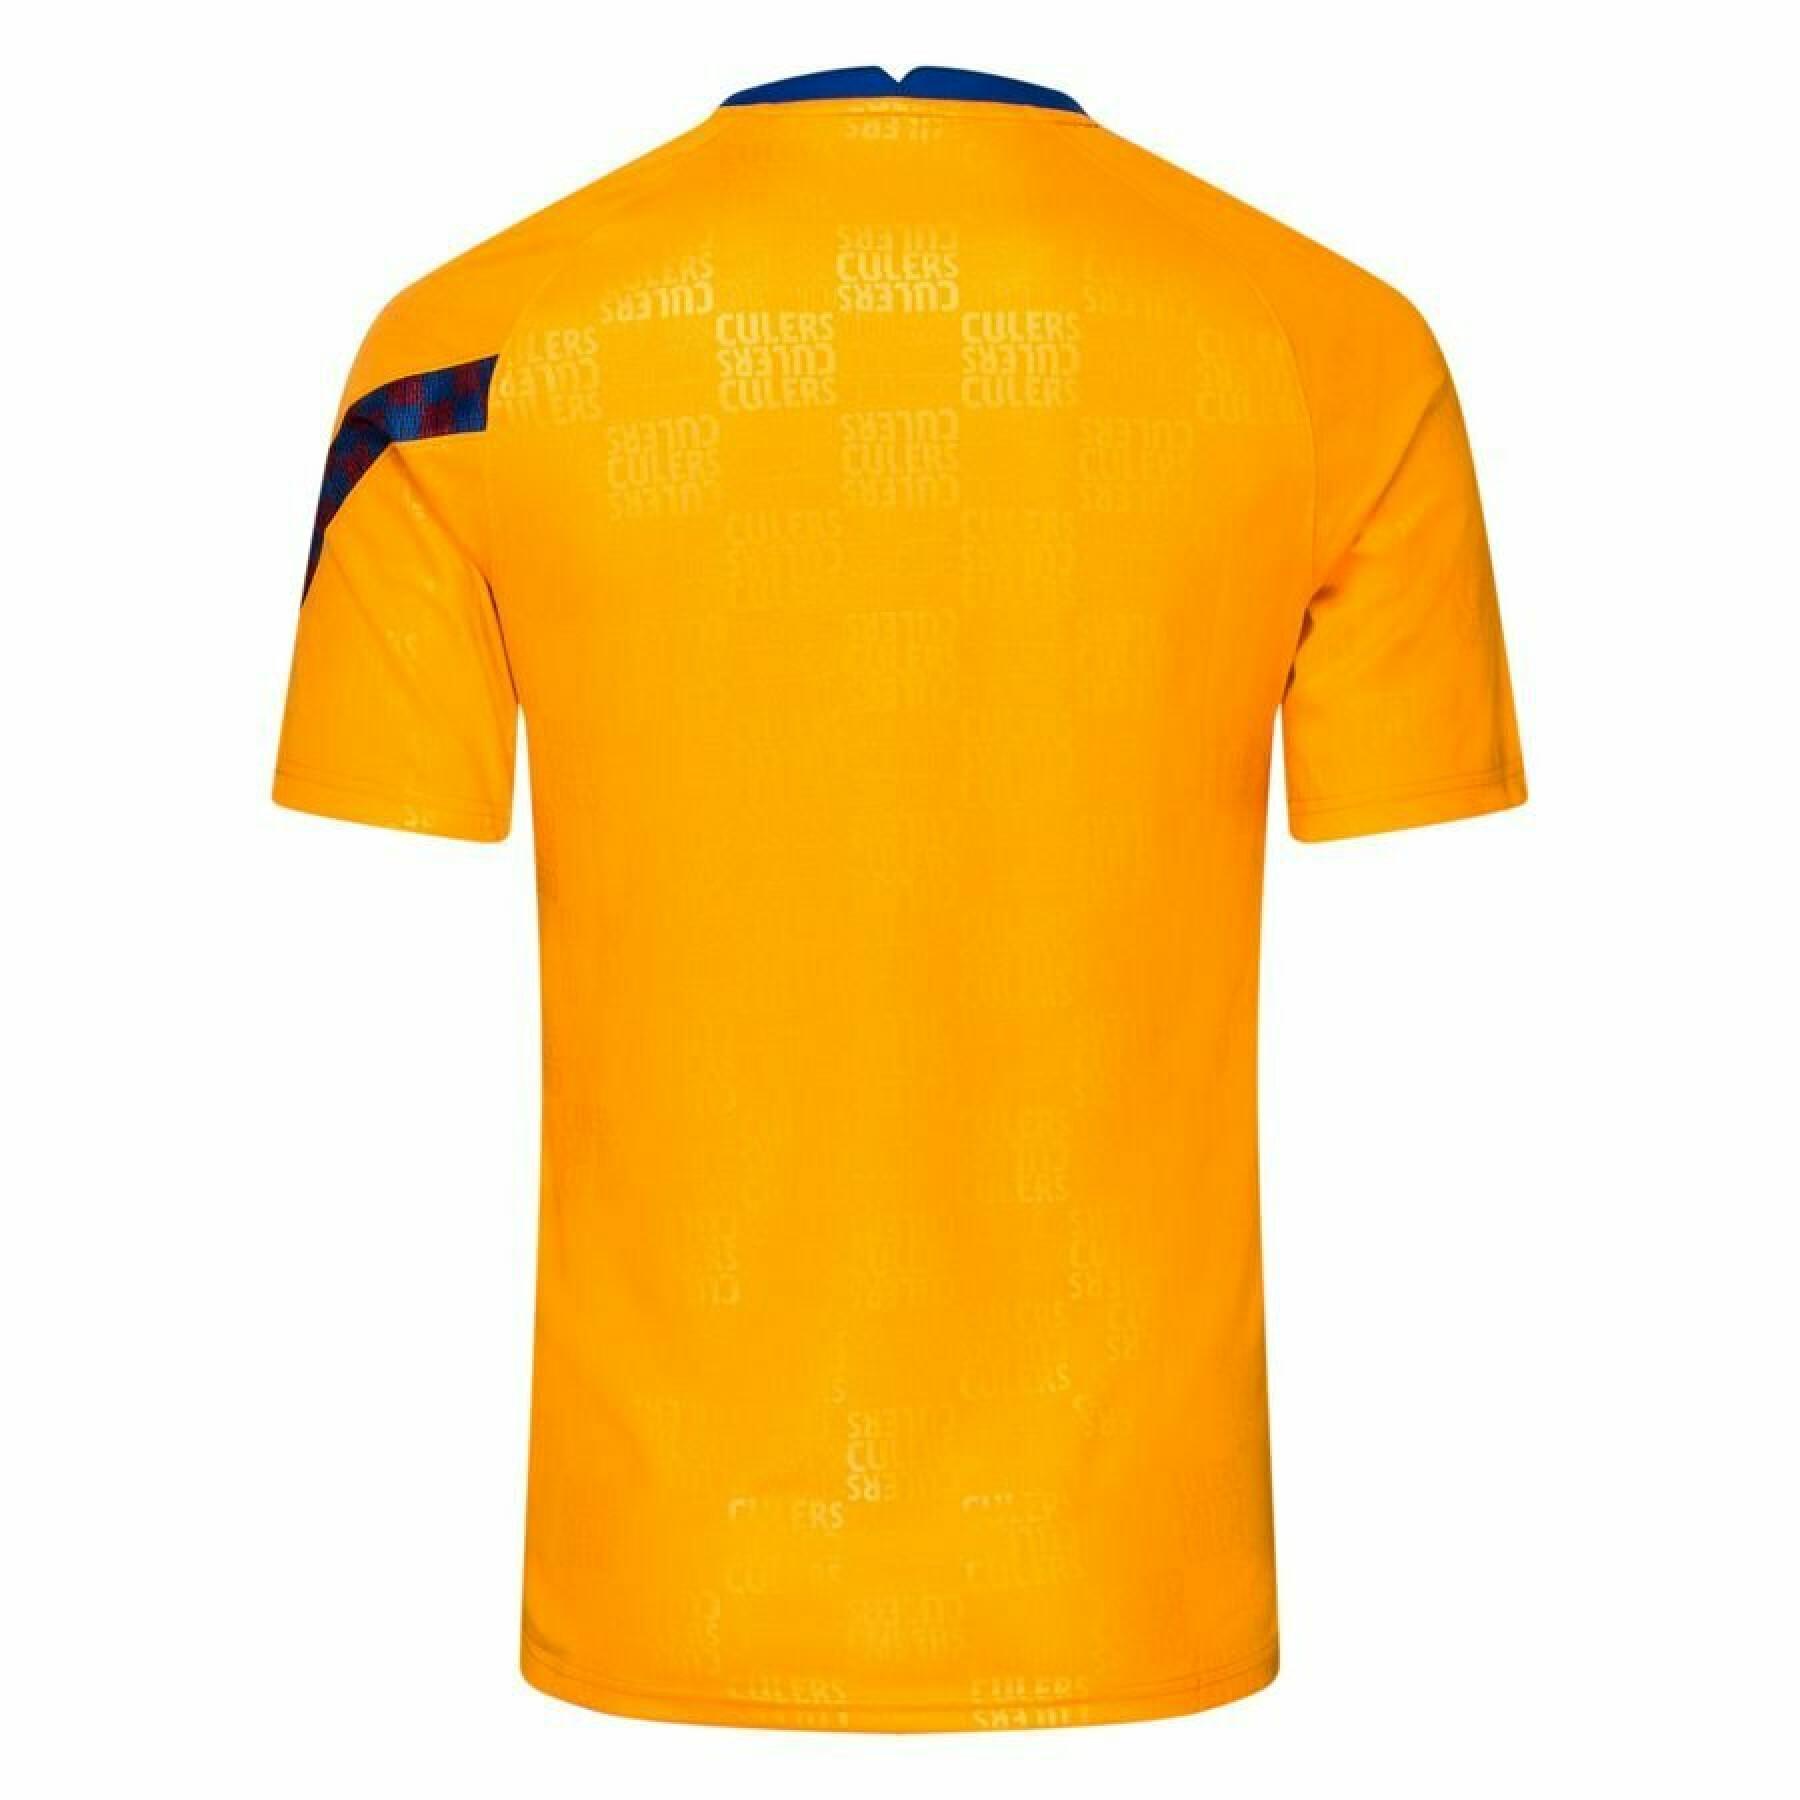 Kinder-T-shirt FC barcelone 2021/22 Dri-FIT